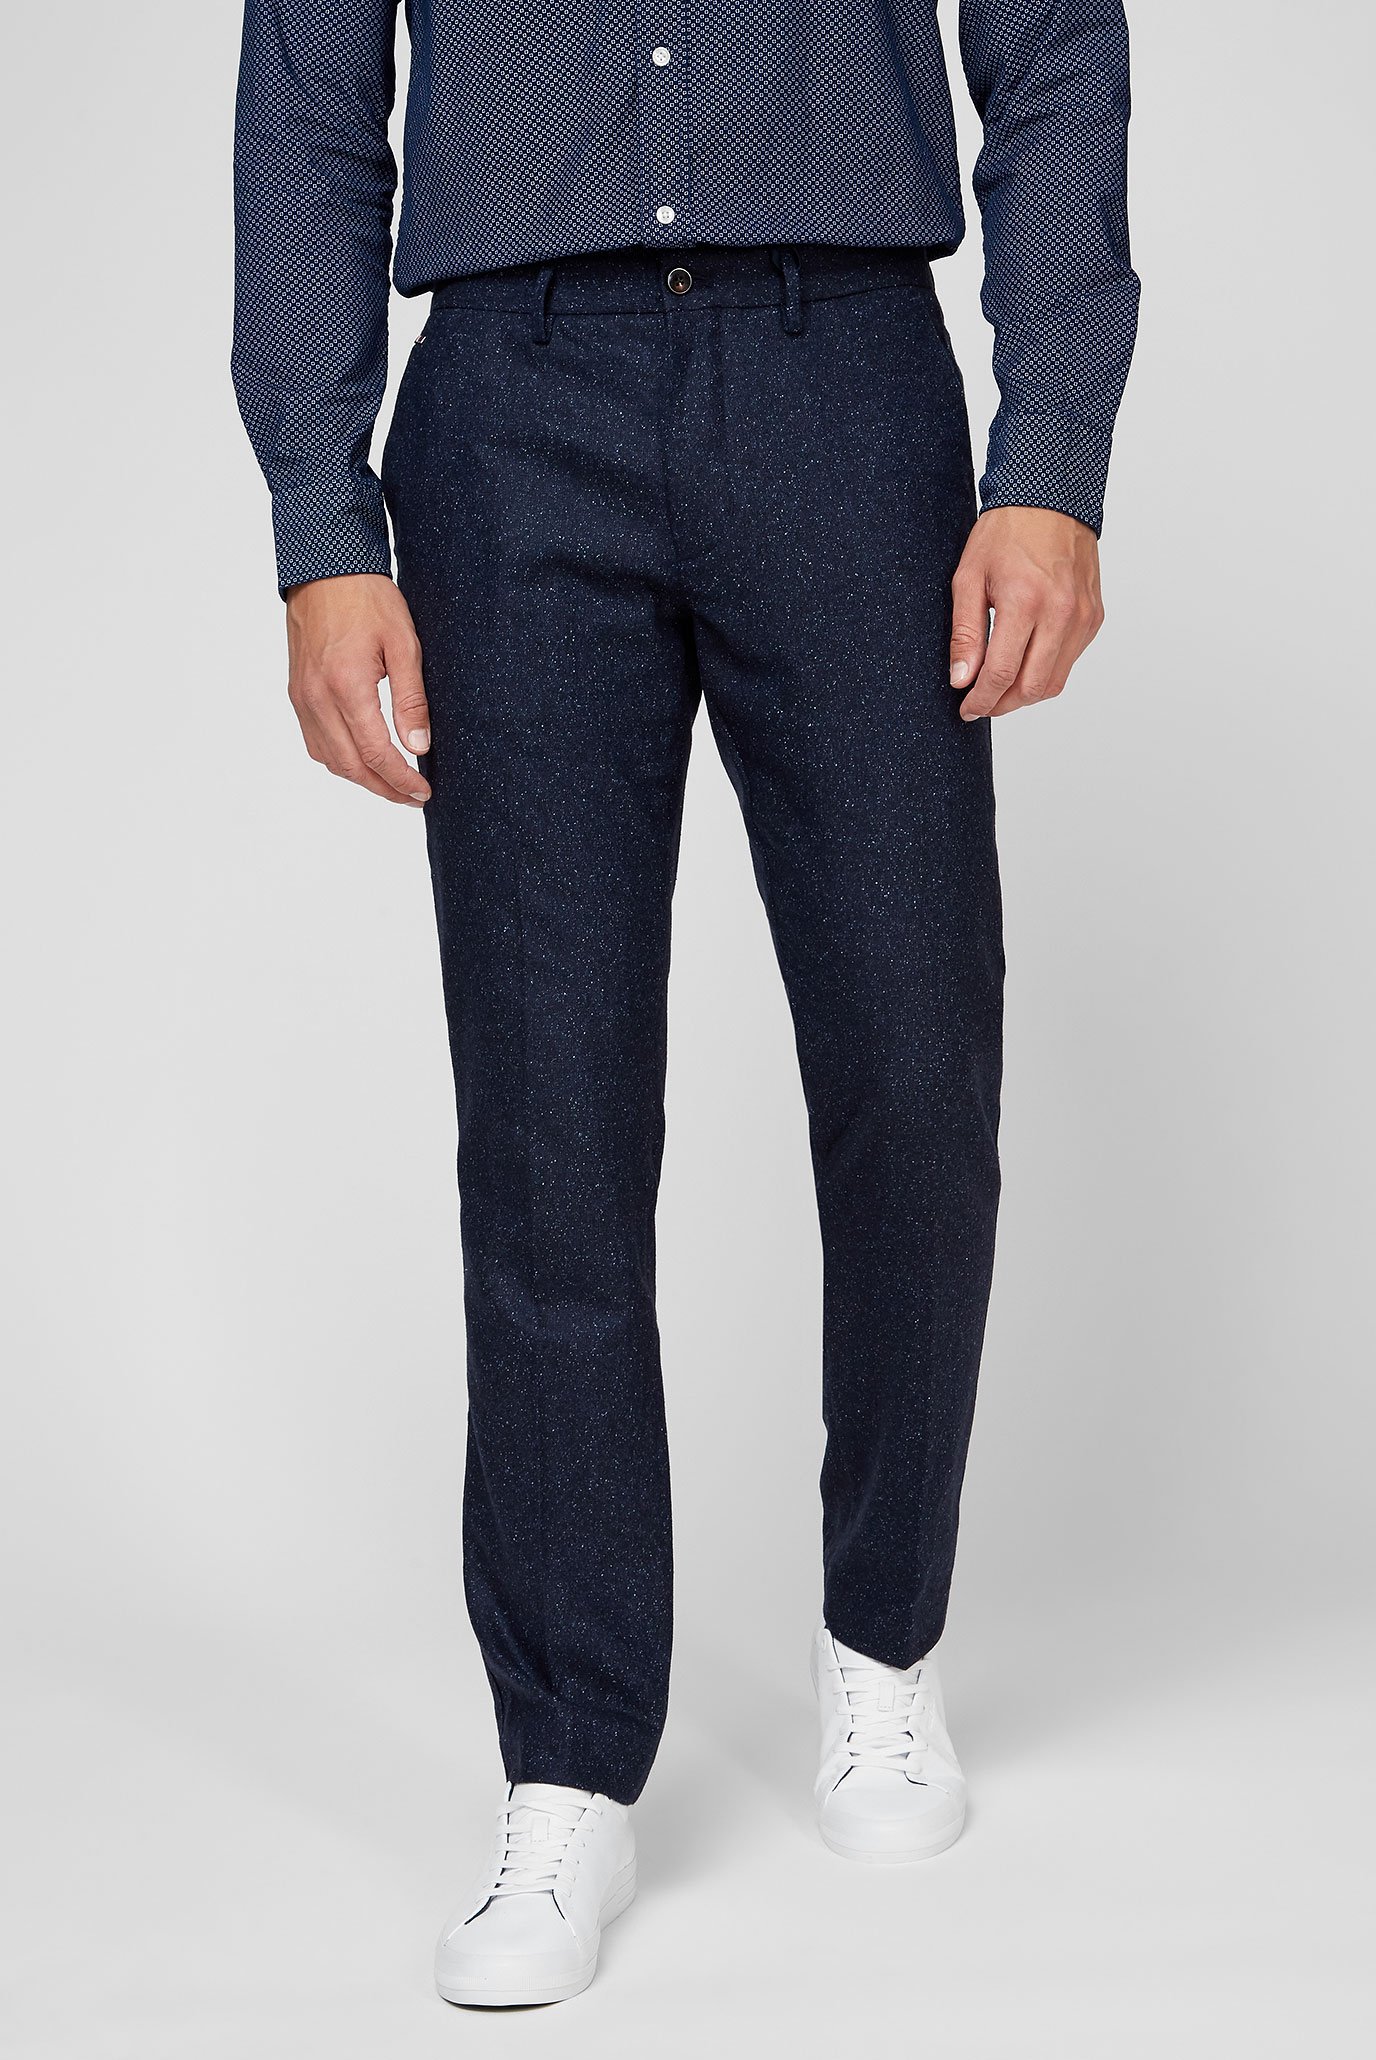 Мужские синие шерстяные брюки DENTON DONEGAL 1